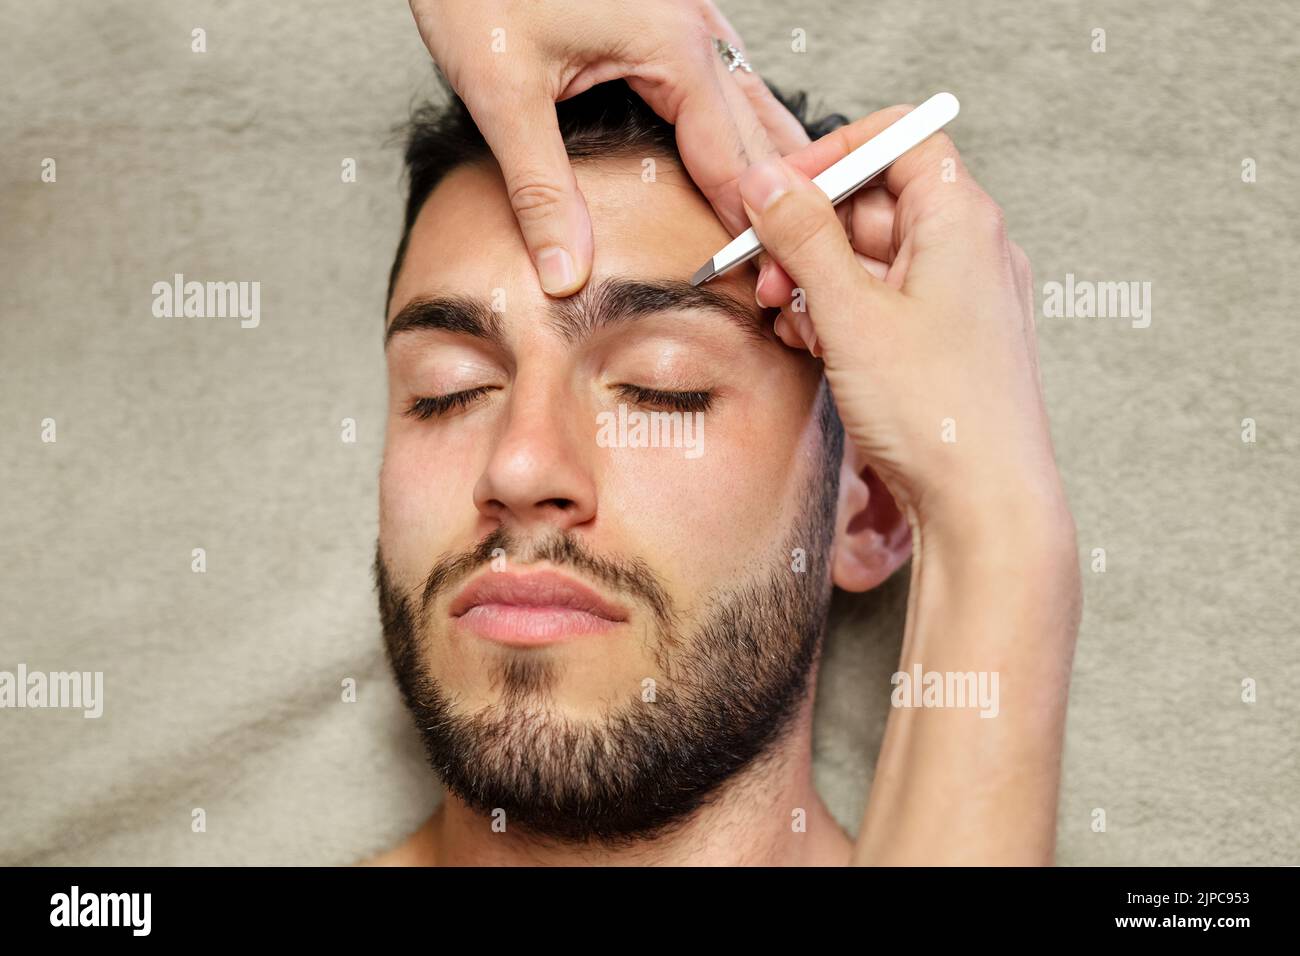 Draufsicht der anonymen Kosmetikerin, die während der Arbeit im Schönheitssstudio mit einer Pinzette Augenbrauenhaare eines ruhigen jungen männlichen Klienten pflückt Stockfoto